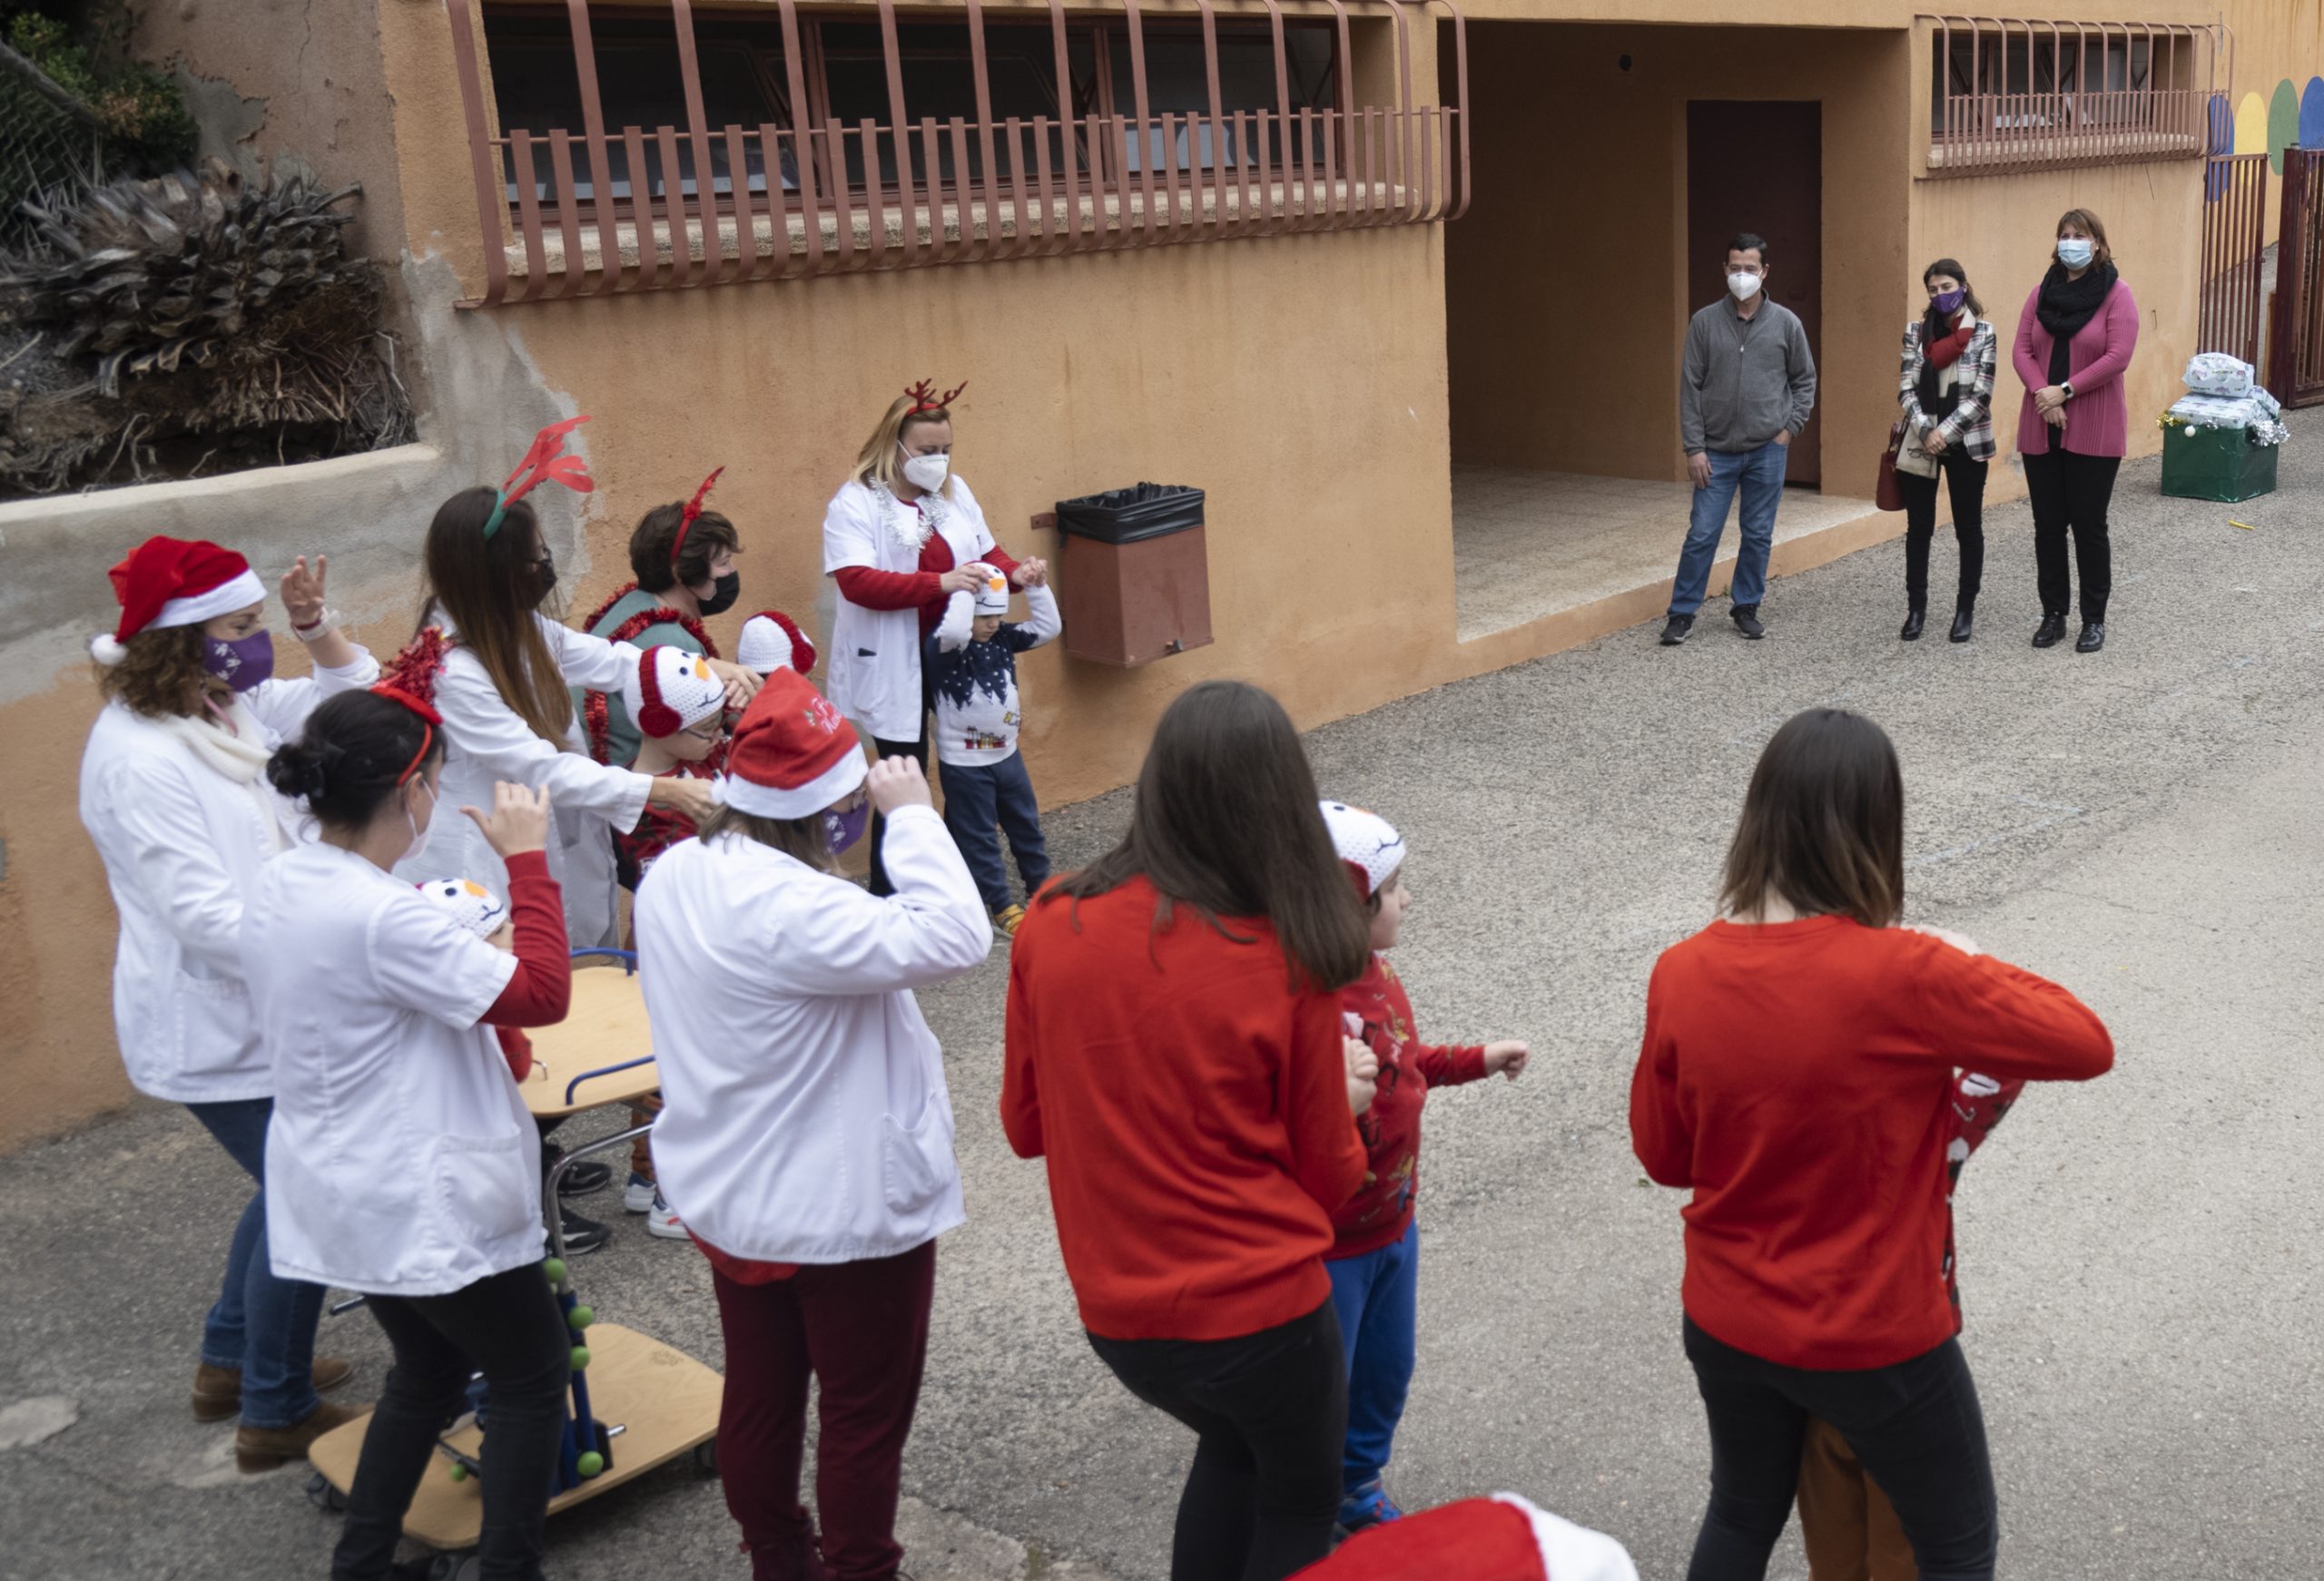 La Diputación de Castellón celebra la Navidad en el CEE de Penyeta Roja con la donación de juegos para que el alumnado